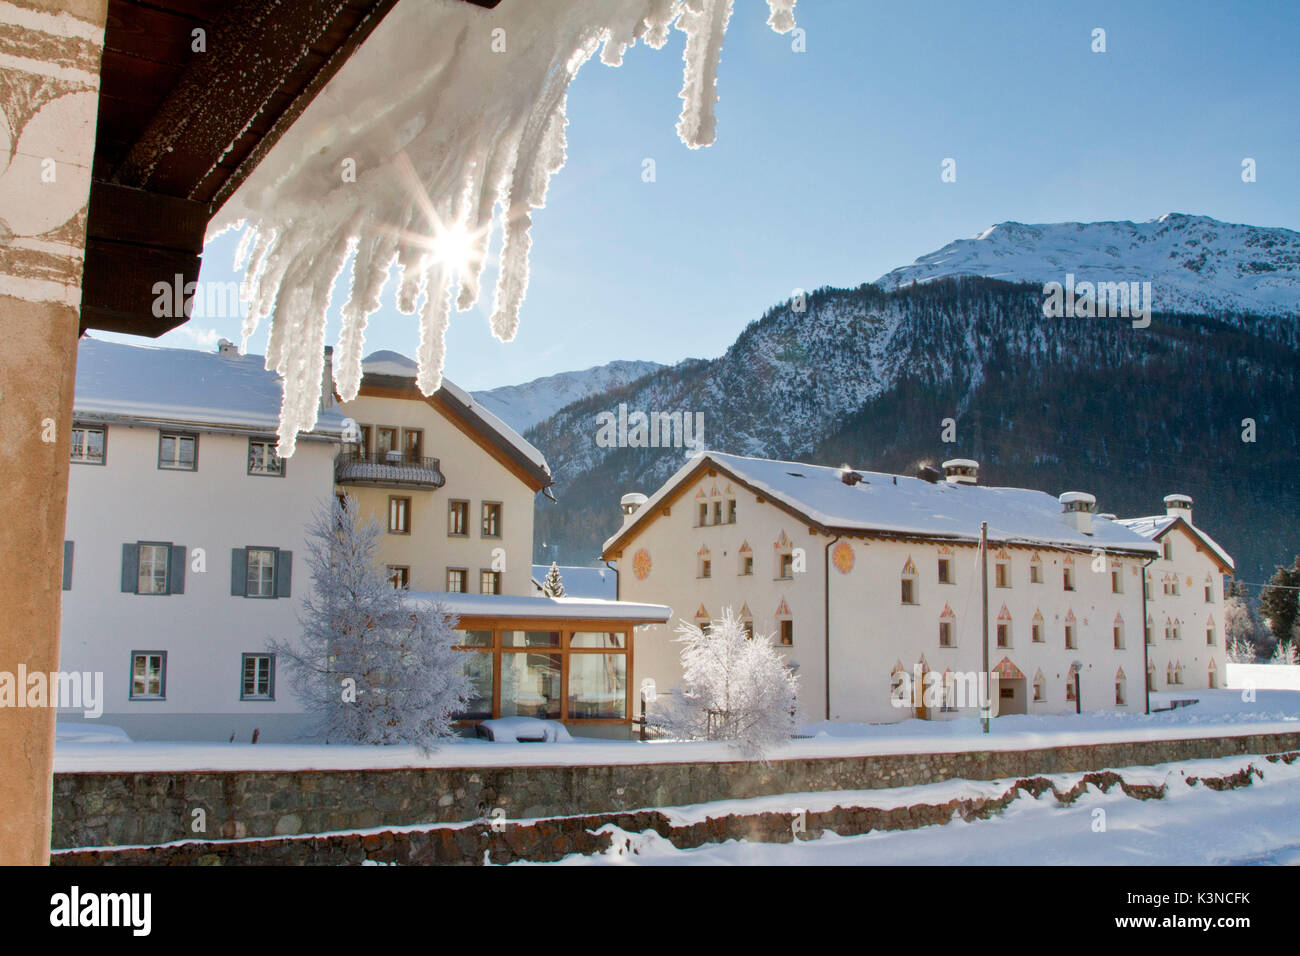 Europa, Suiza, Engadin. Paisaje helado invierno de la Punt, Alpes Suizos Foto de stock